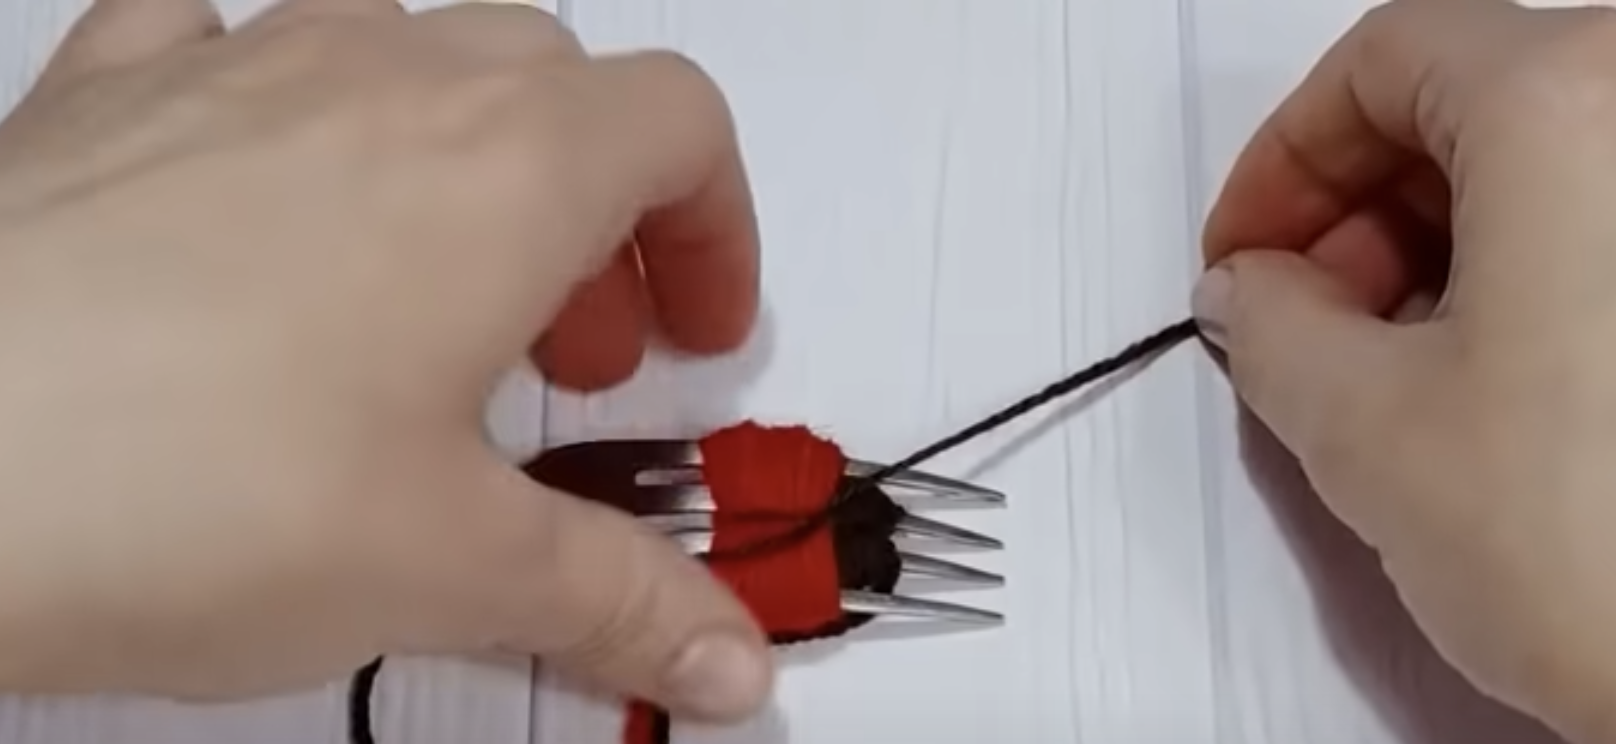 Esto te va a encantar: ¡Un tutorial para una reconfortante decoración que creas con un tenedor y un hilo!